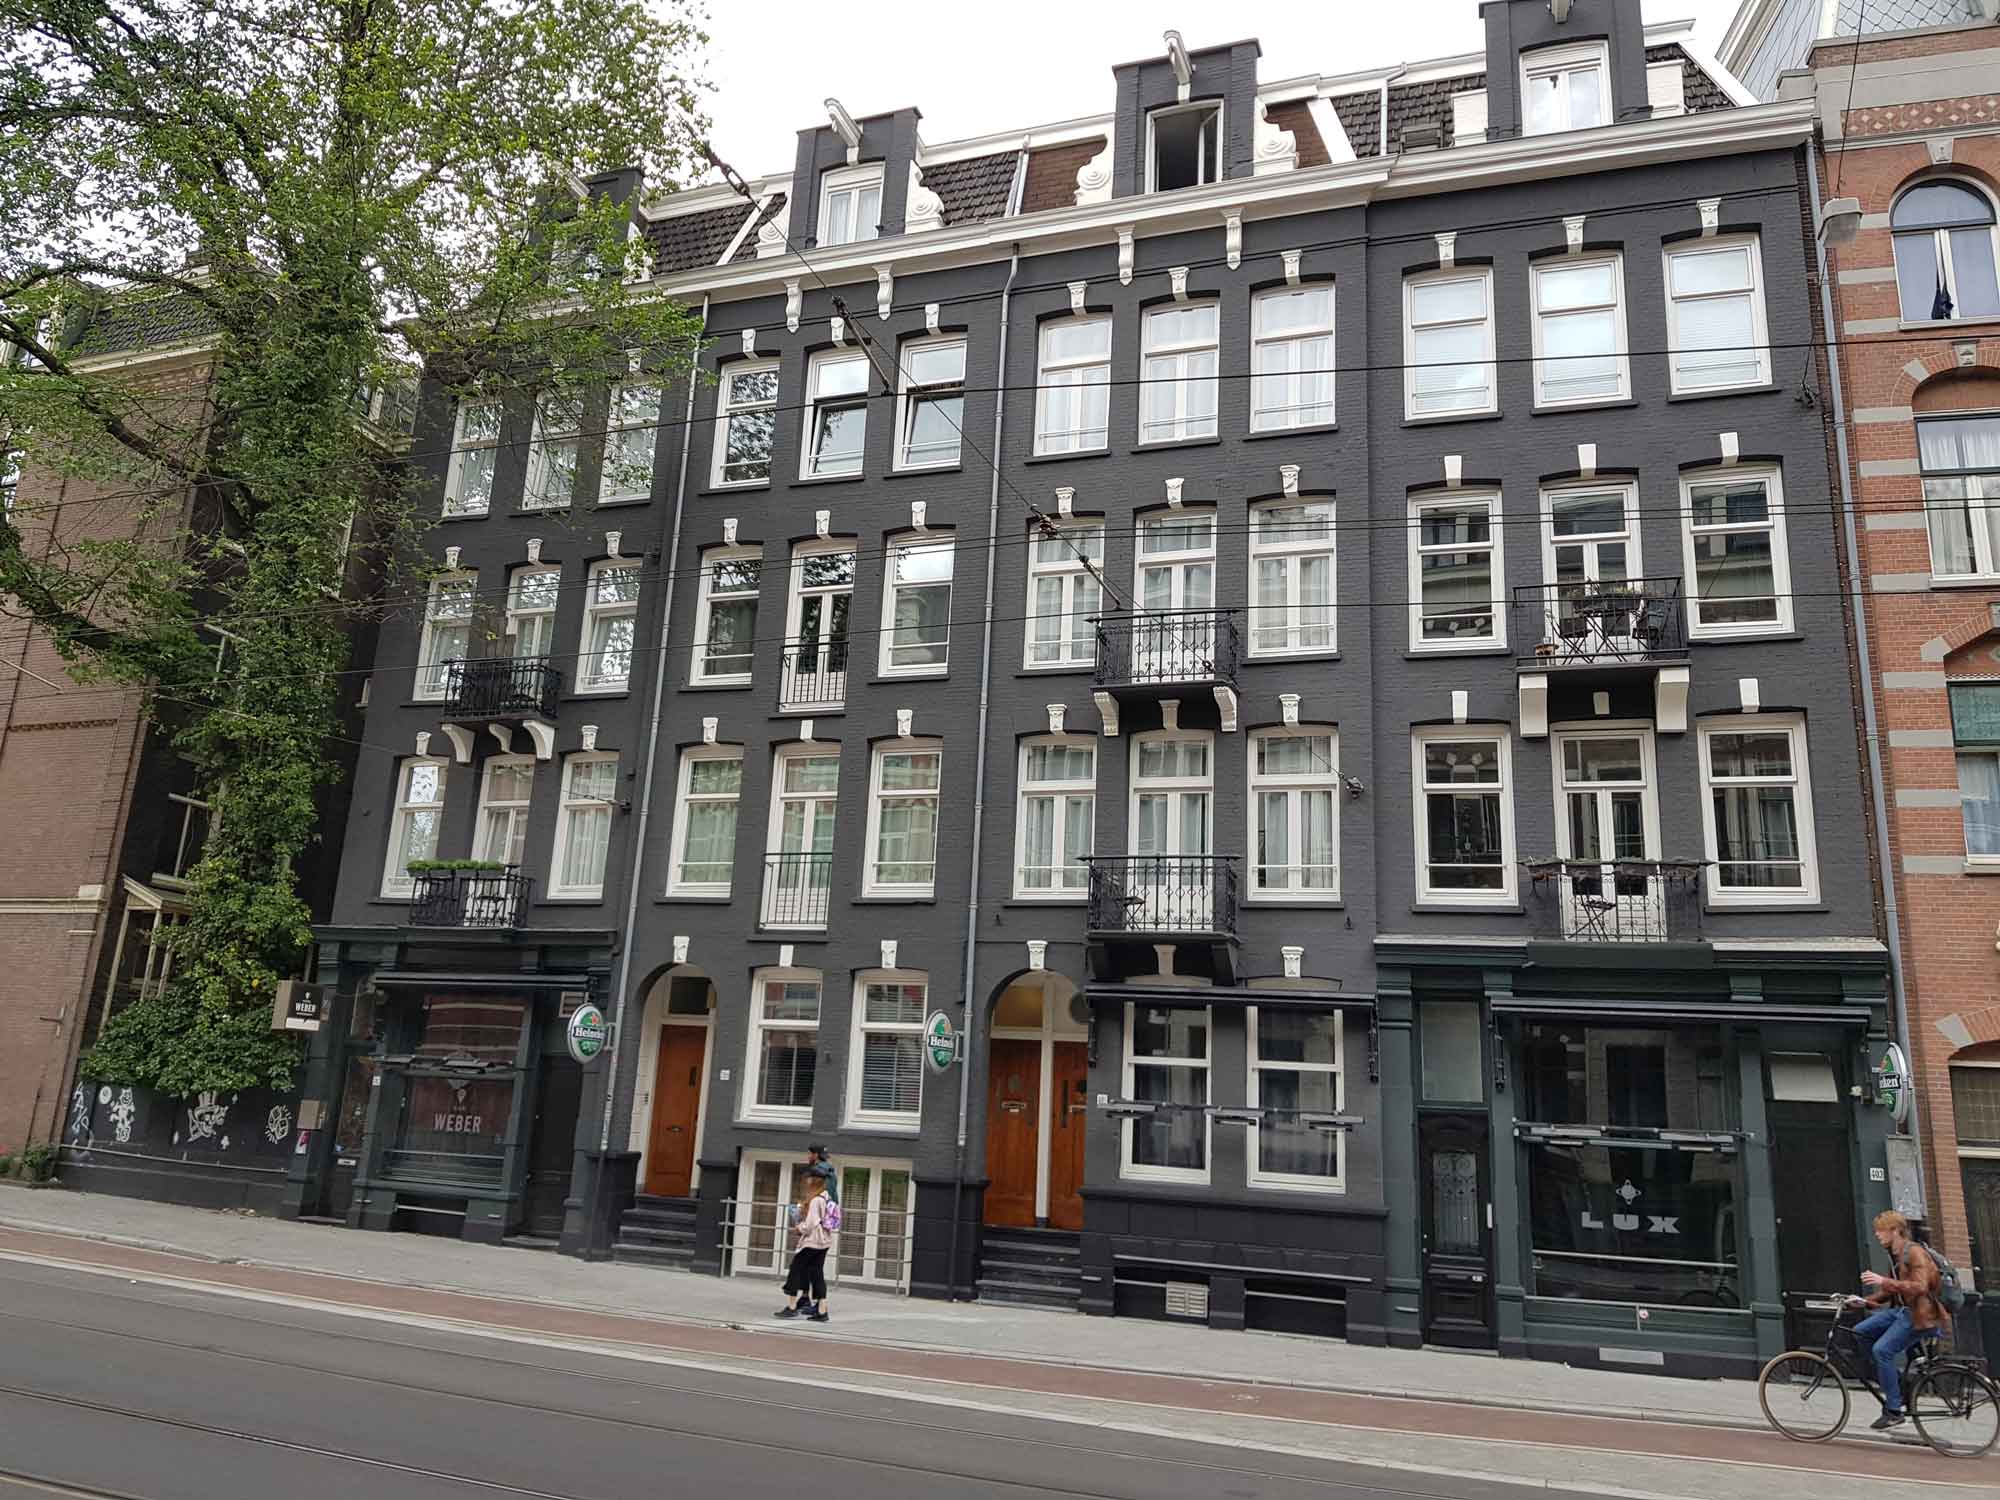 Hotel Weber Amsterdam na het schilderen